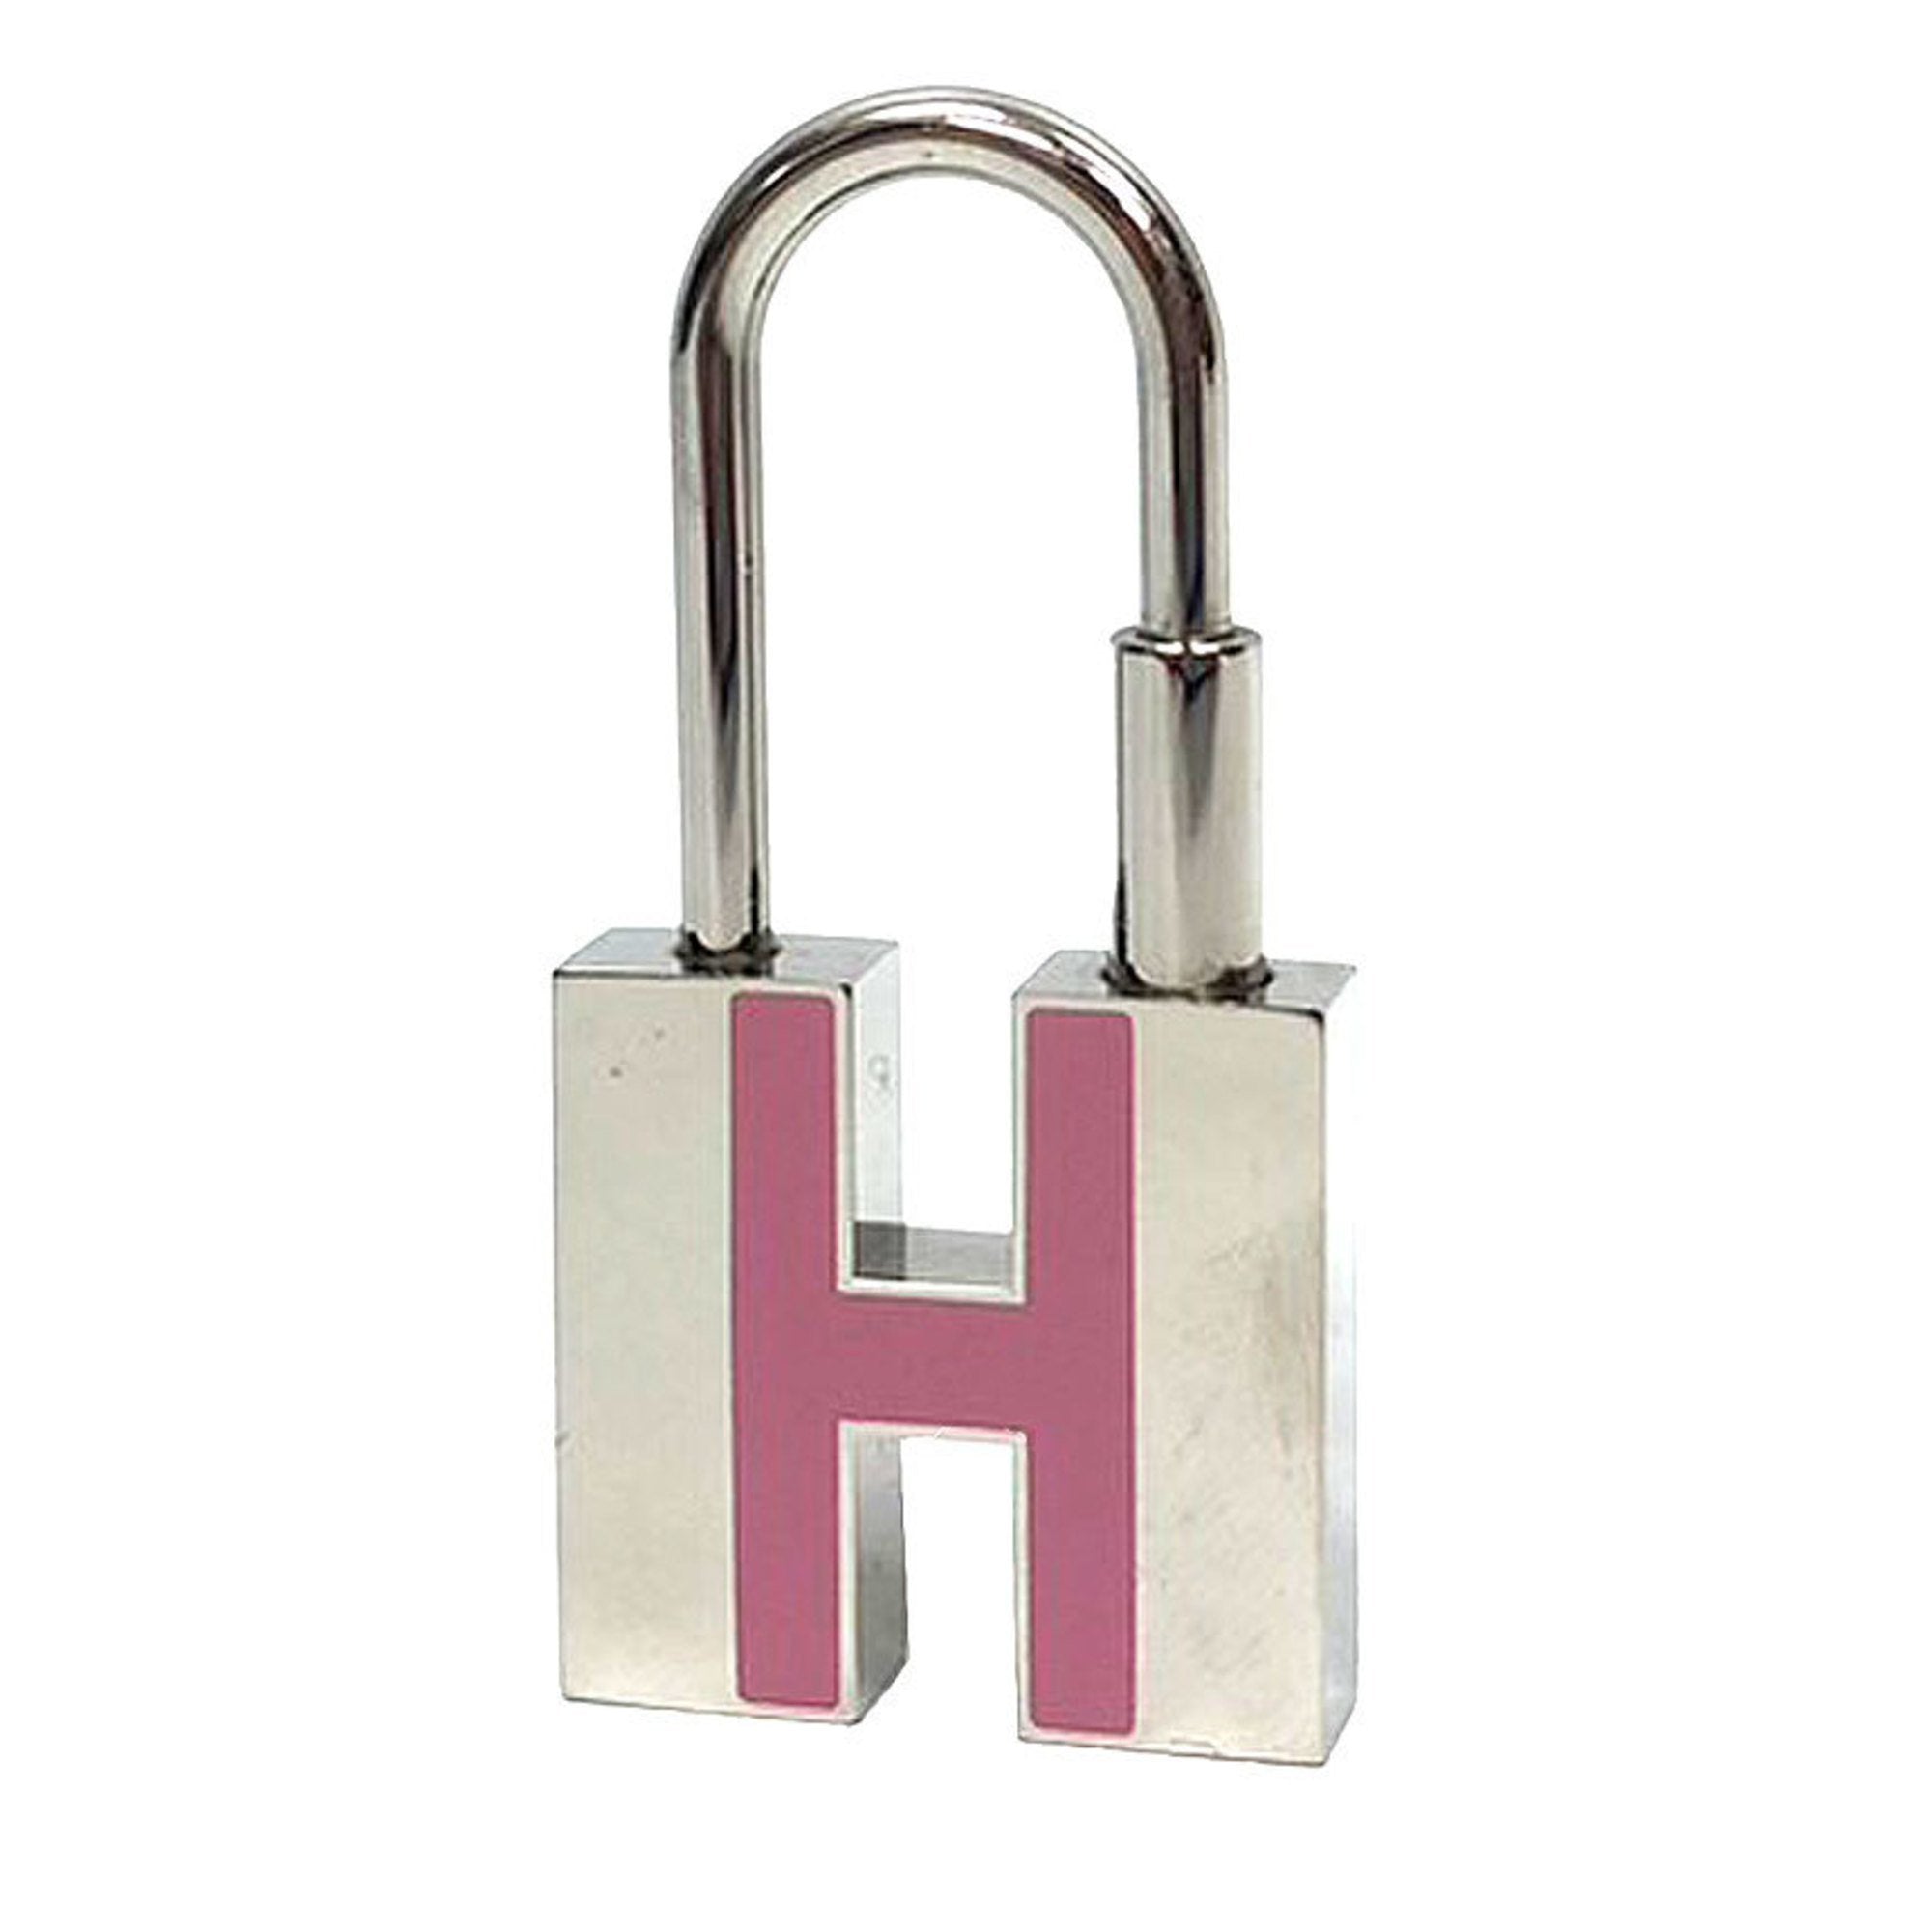 Image of HERMES Key Hook Keychain Bag Charm H Cadena Light Pink/Silver